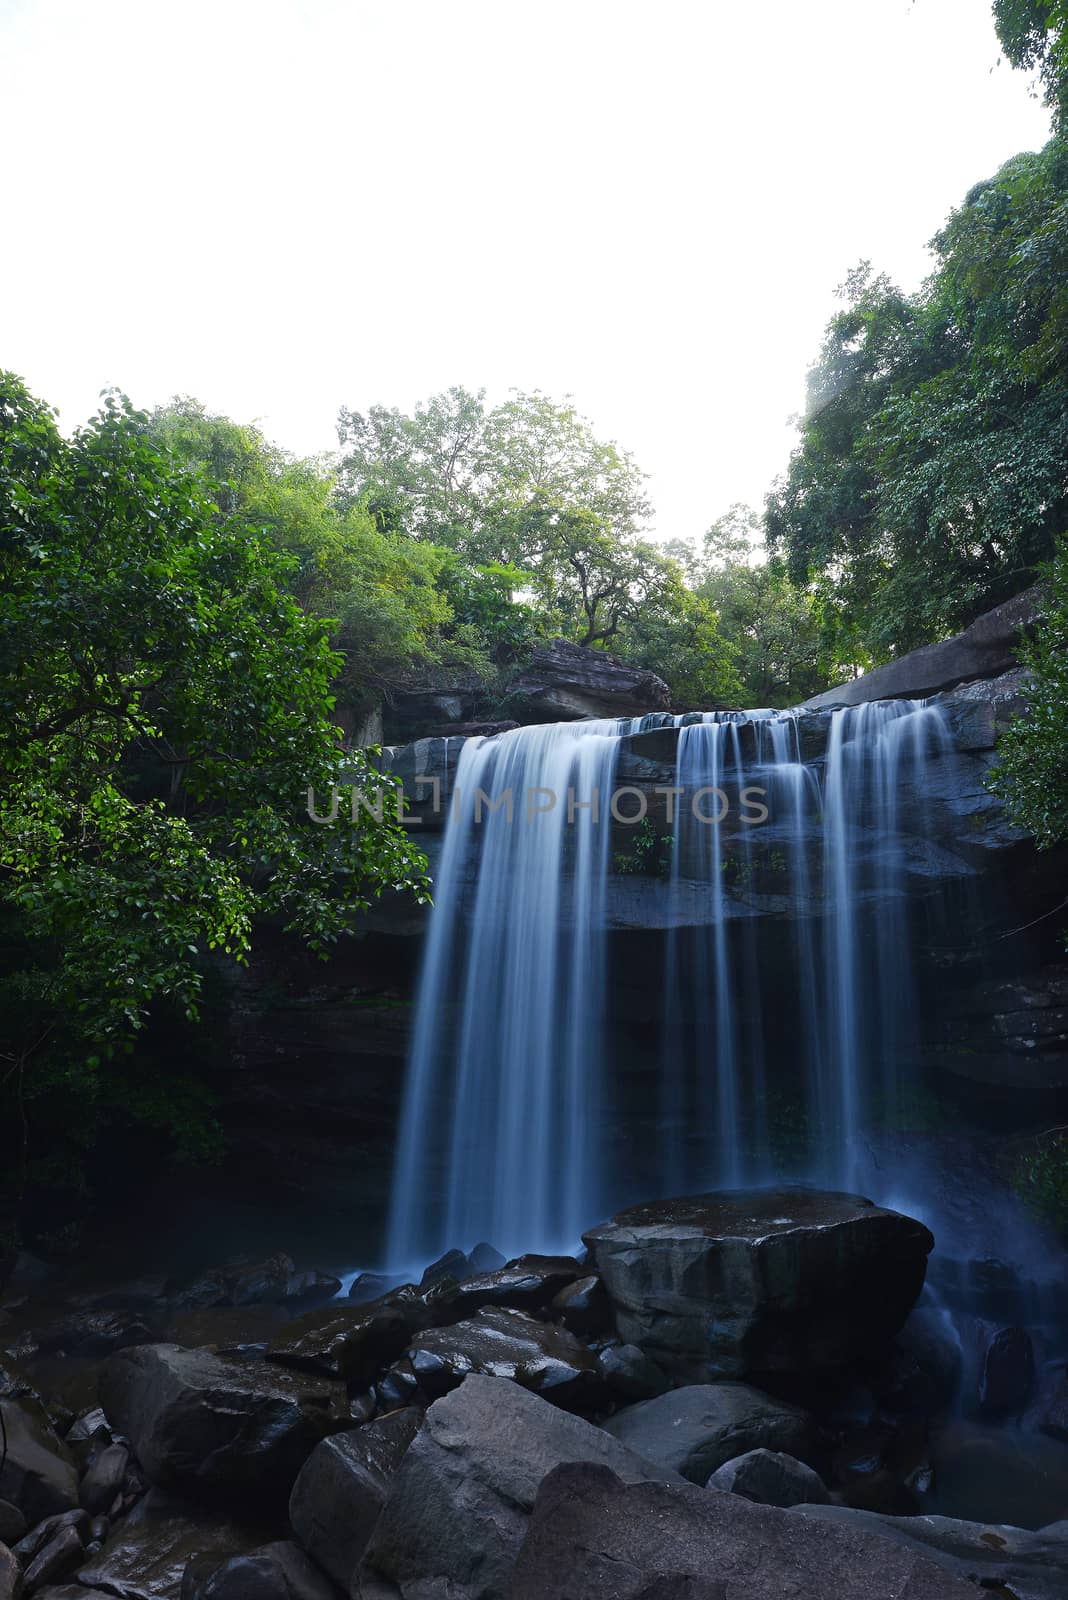 Tung na muang waterfall in Thailand